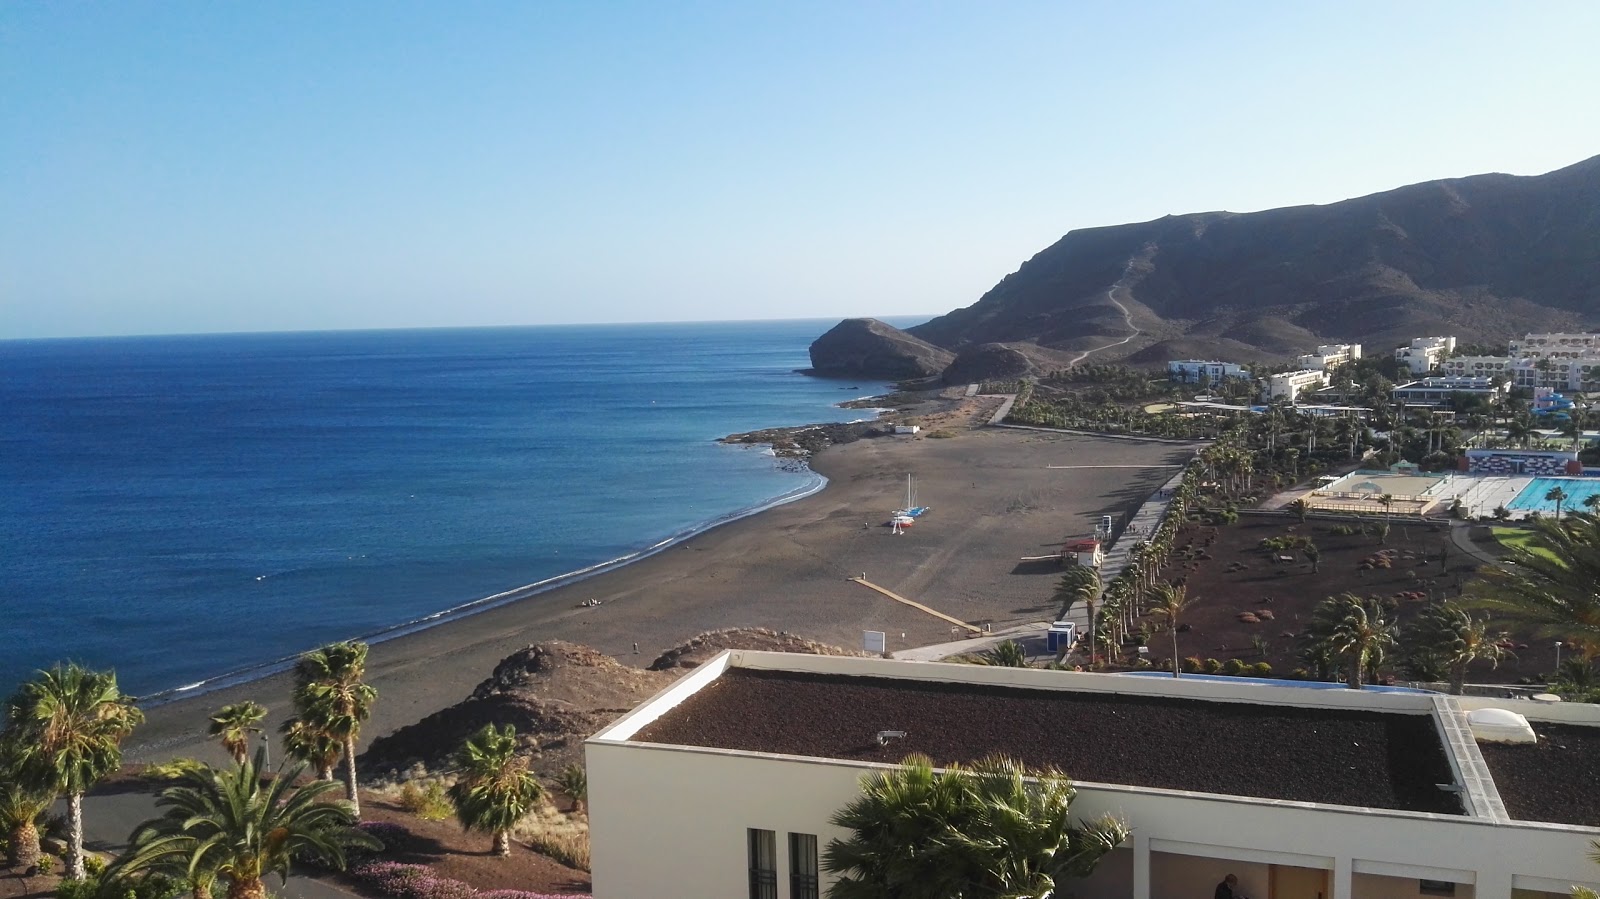 Playa de los Pobres'in fotoğrafı gri kum yüzey ile